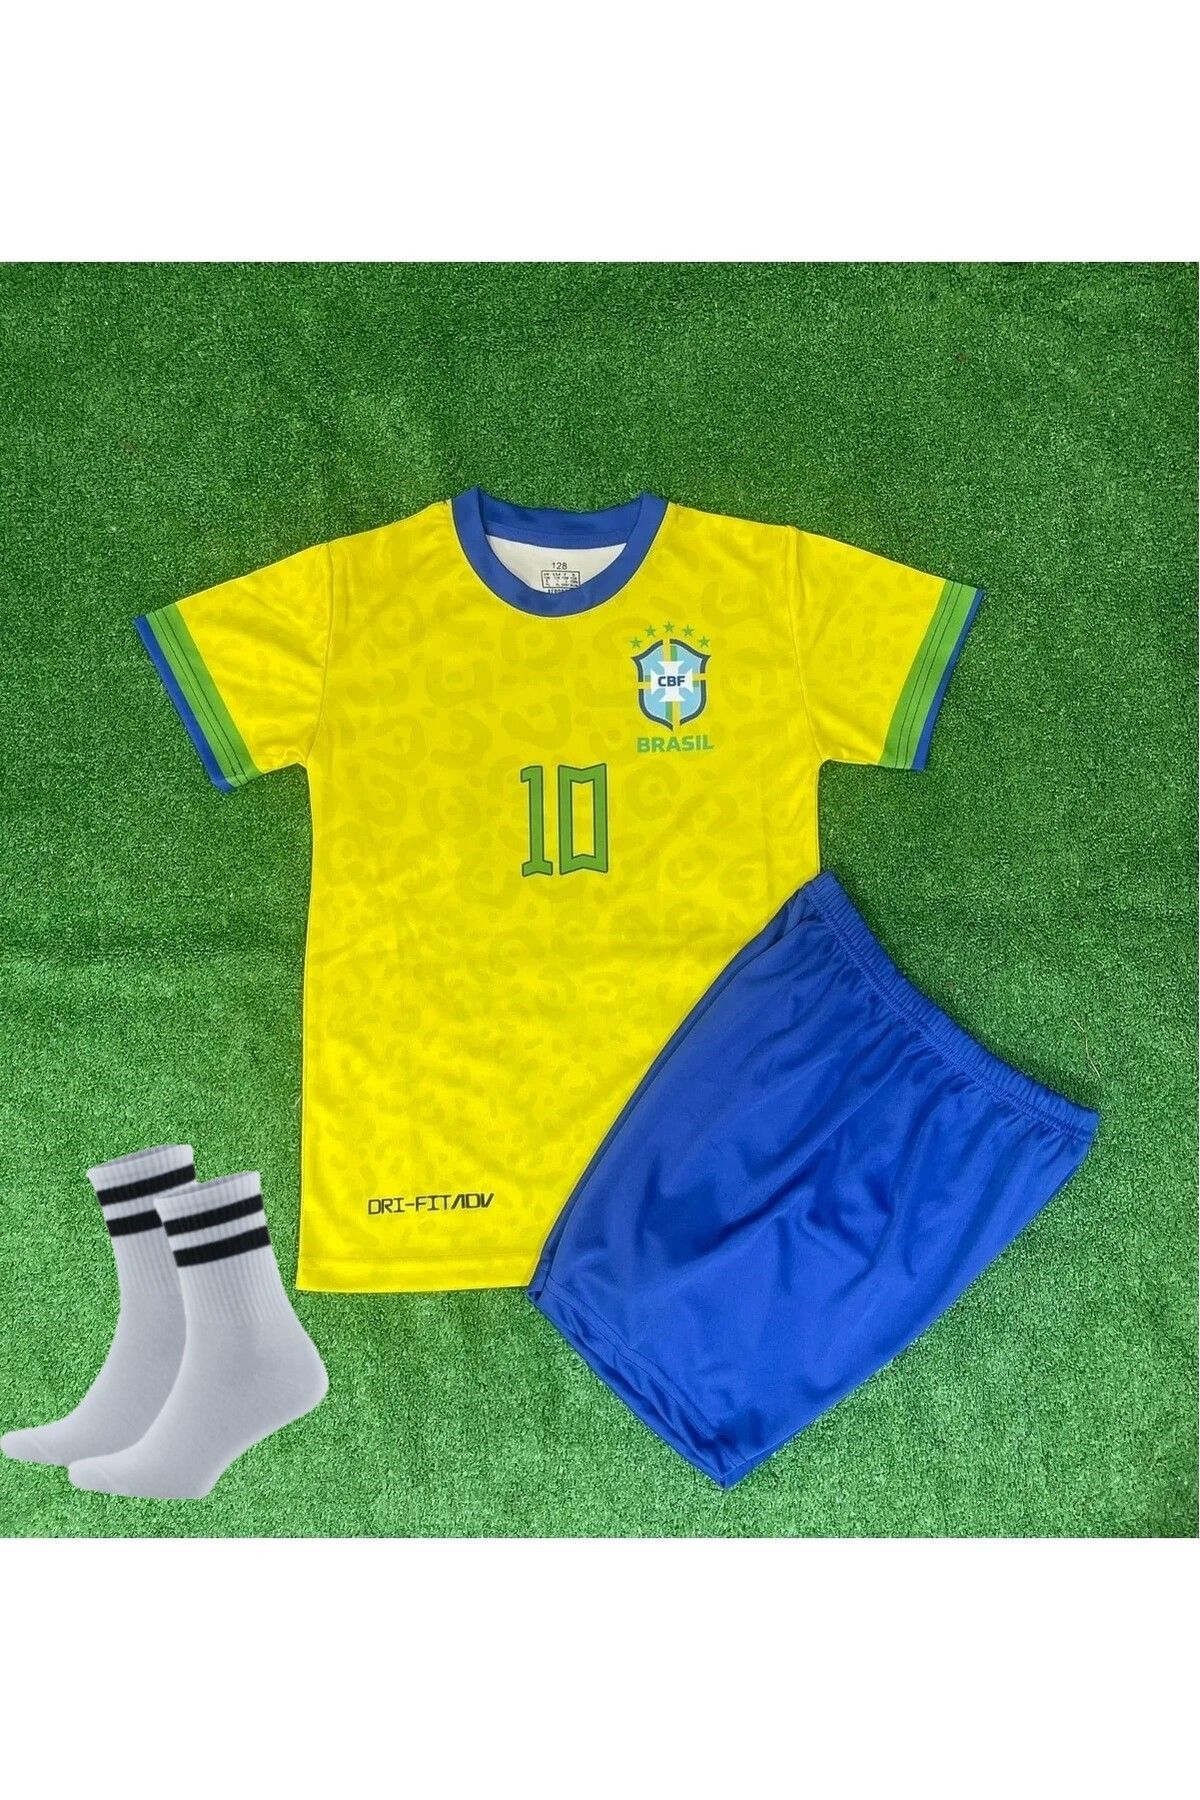 ZİLONG Brezilya Dünya Kupası Yeni Sezon Neymar Futbol Çocuk Forması Alt Üst 3'lü Set